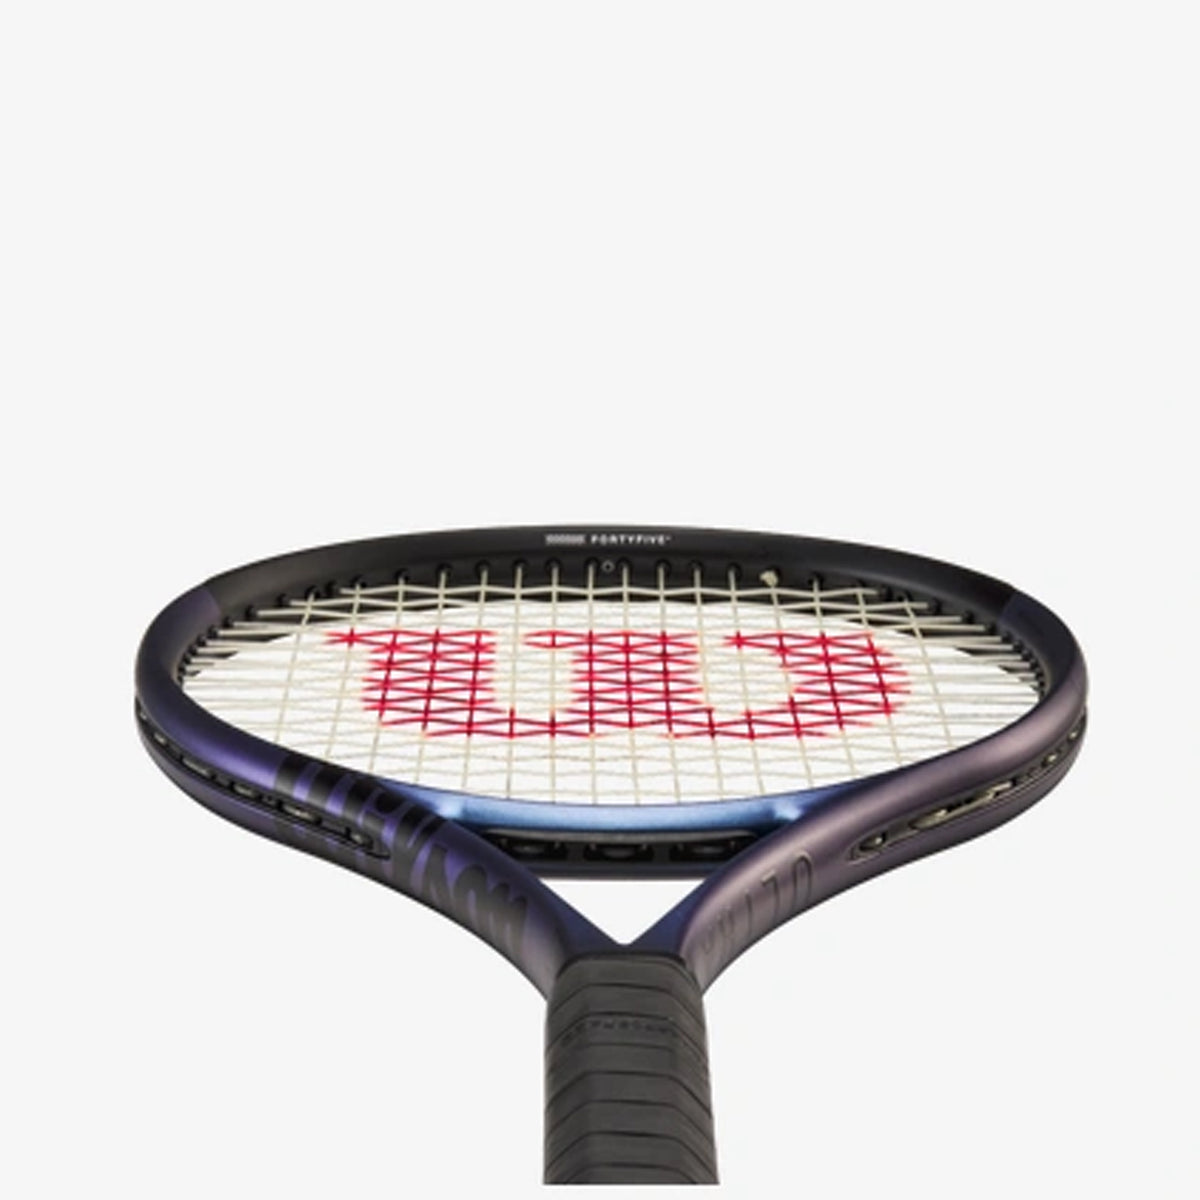 Wilson Ultra 100UL V4.0 Tennis Racket